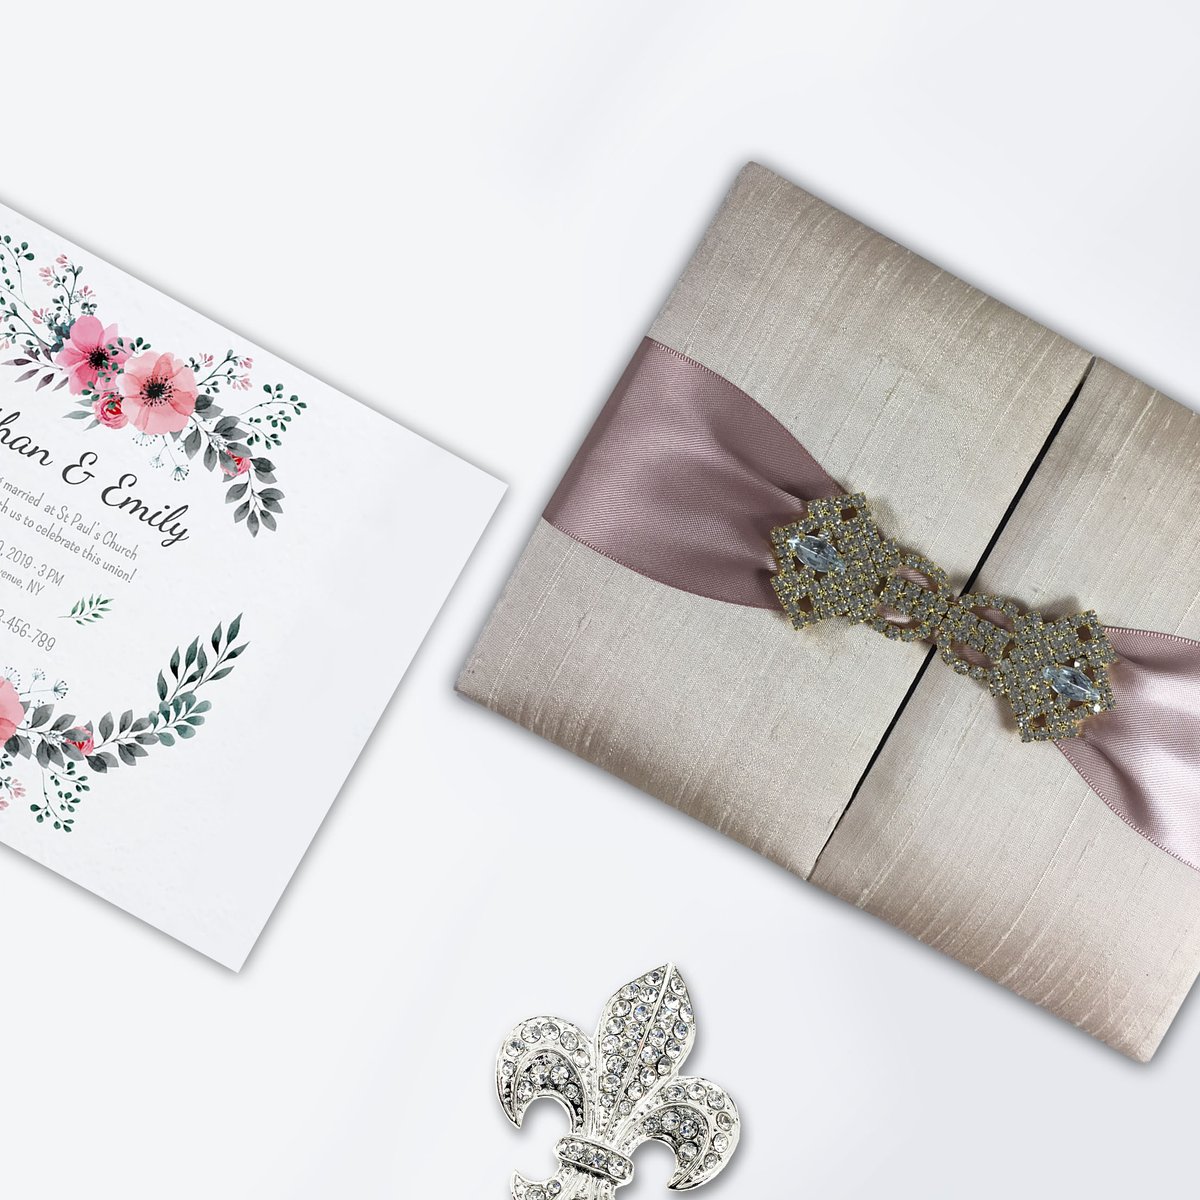 Luxury Thai silk boxes for invitation cards by Dennis Wisser #thaisilkbox #boxedweddinginvitations #weddingboxes #silkinvitations #coutureinvitations